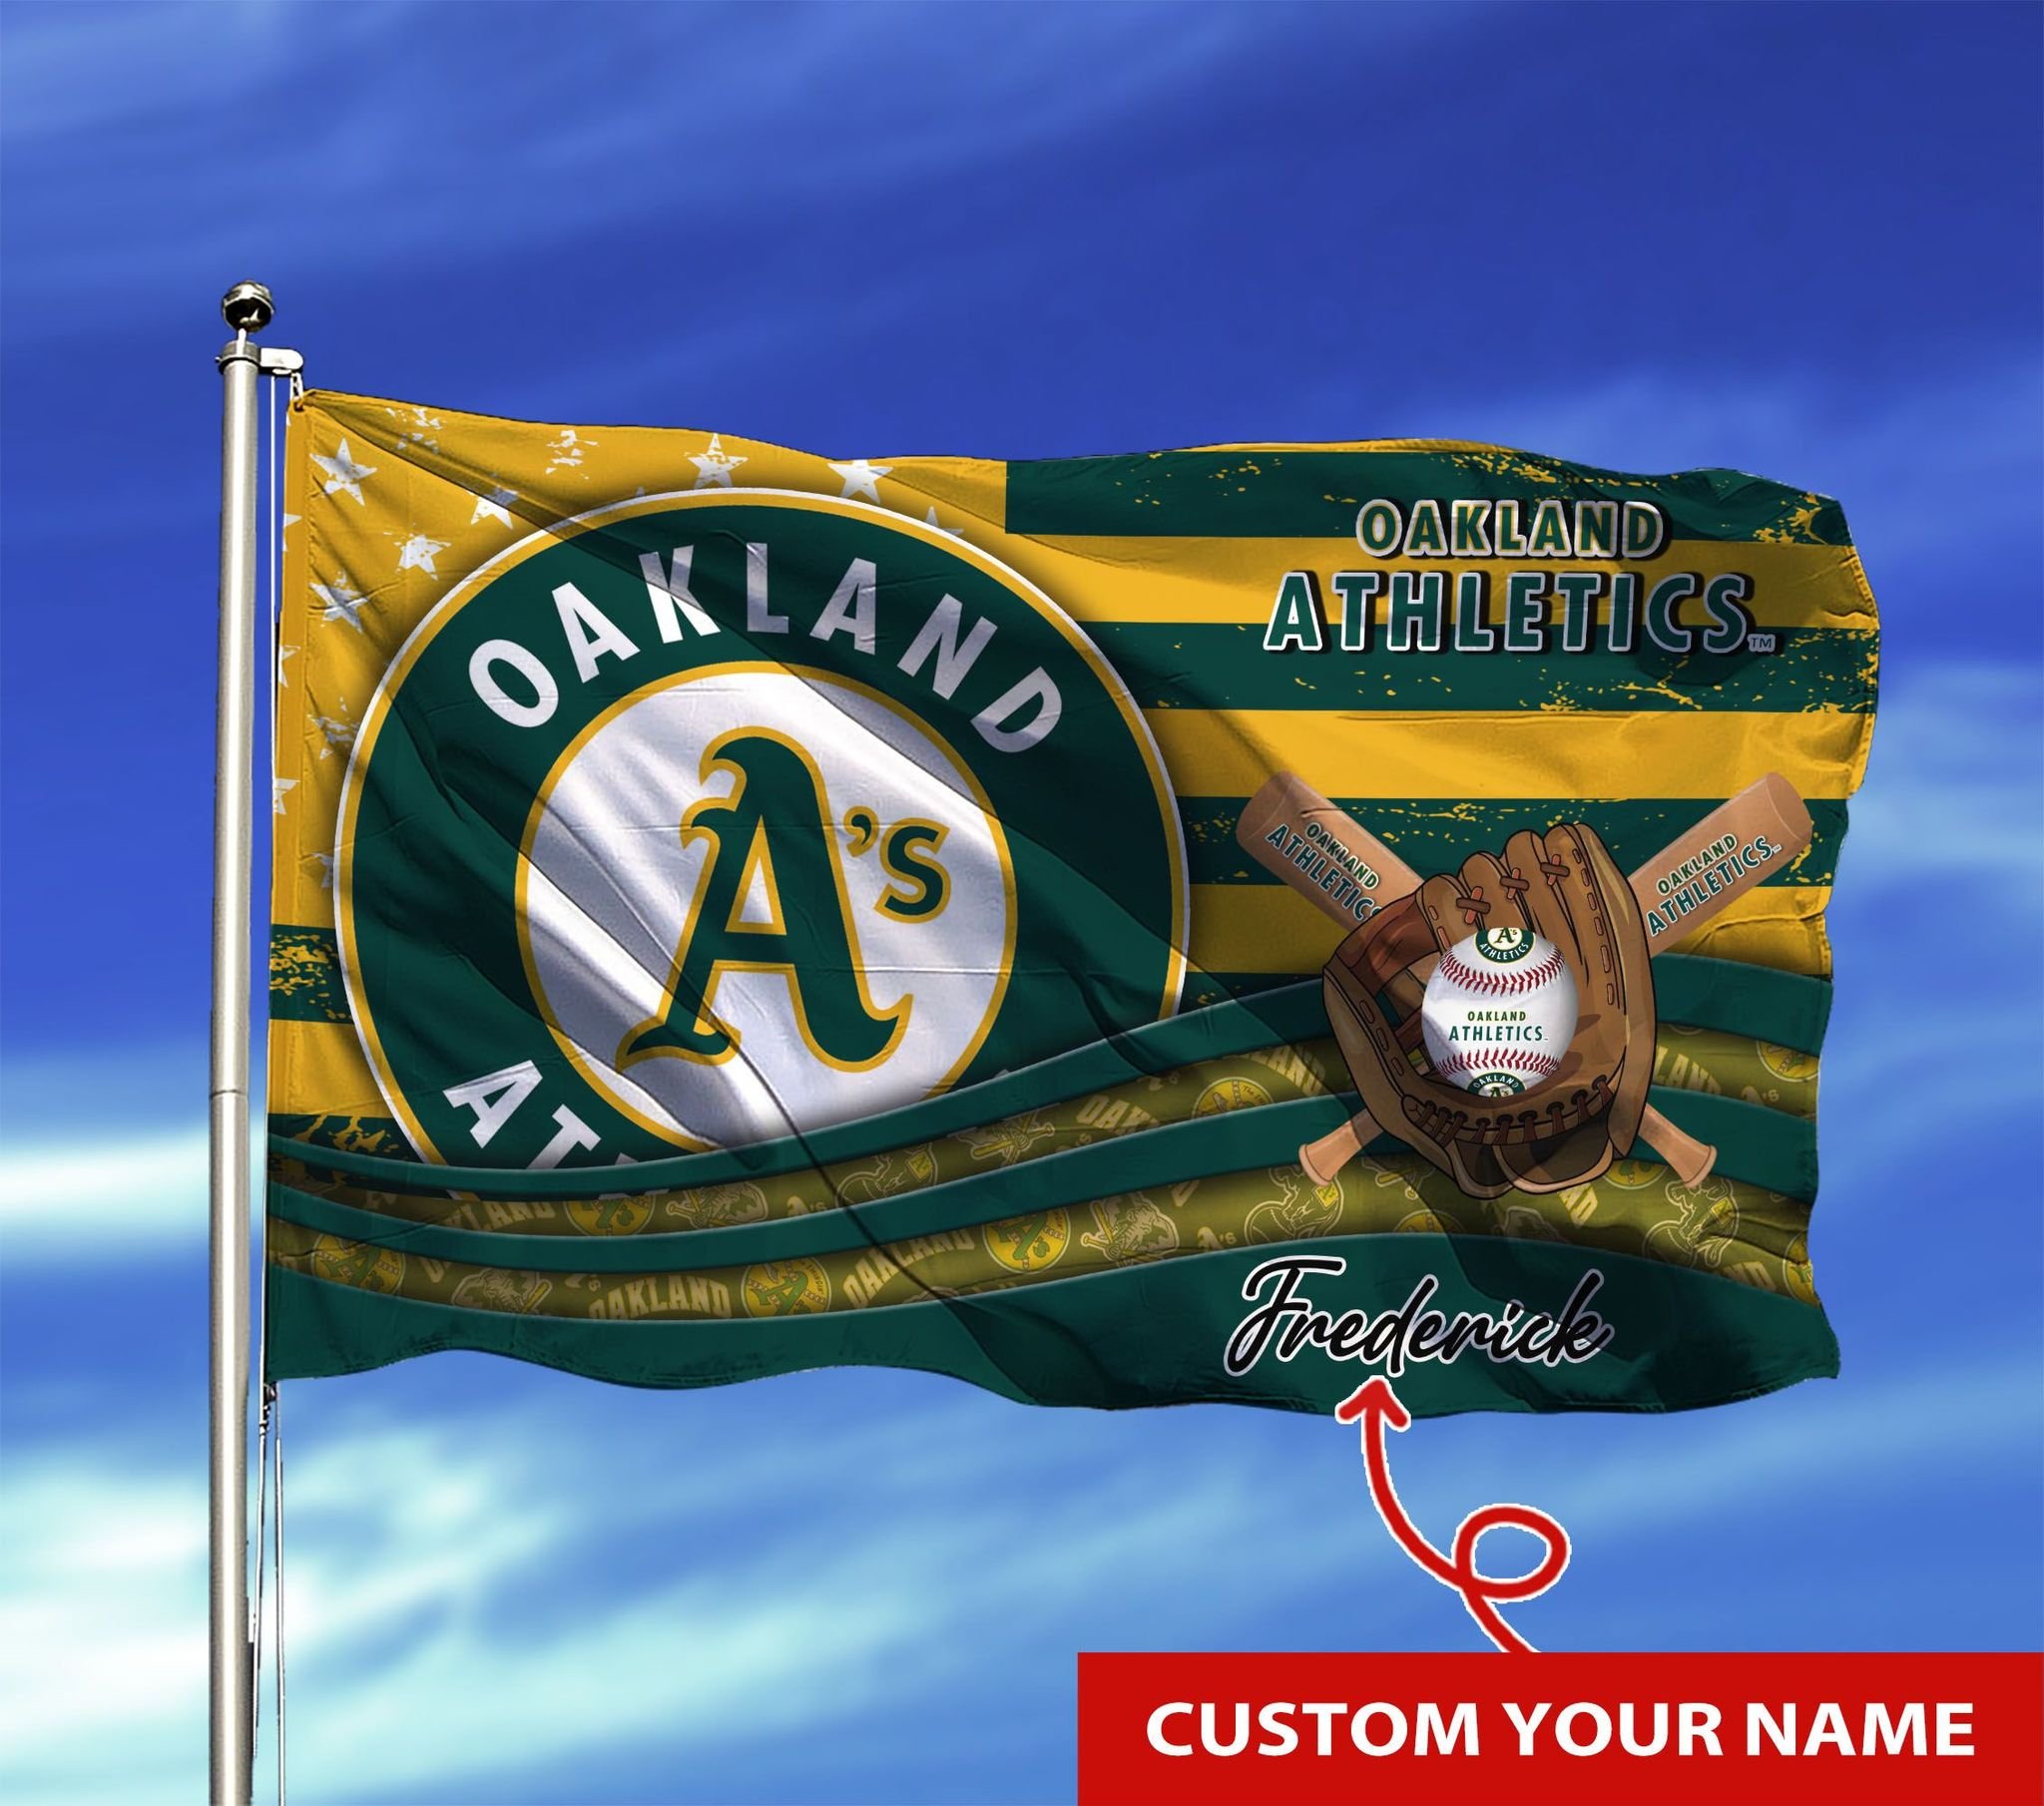 Personalized Oakland Athletics custom name flag 9